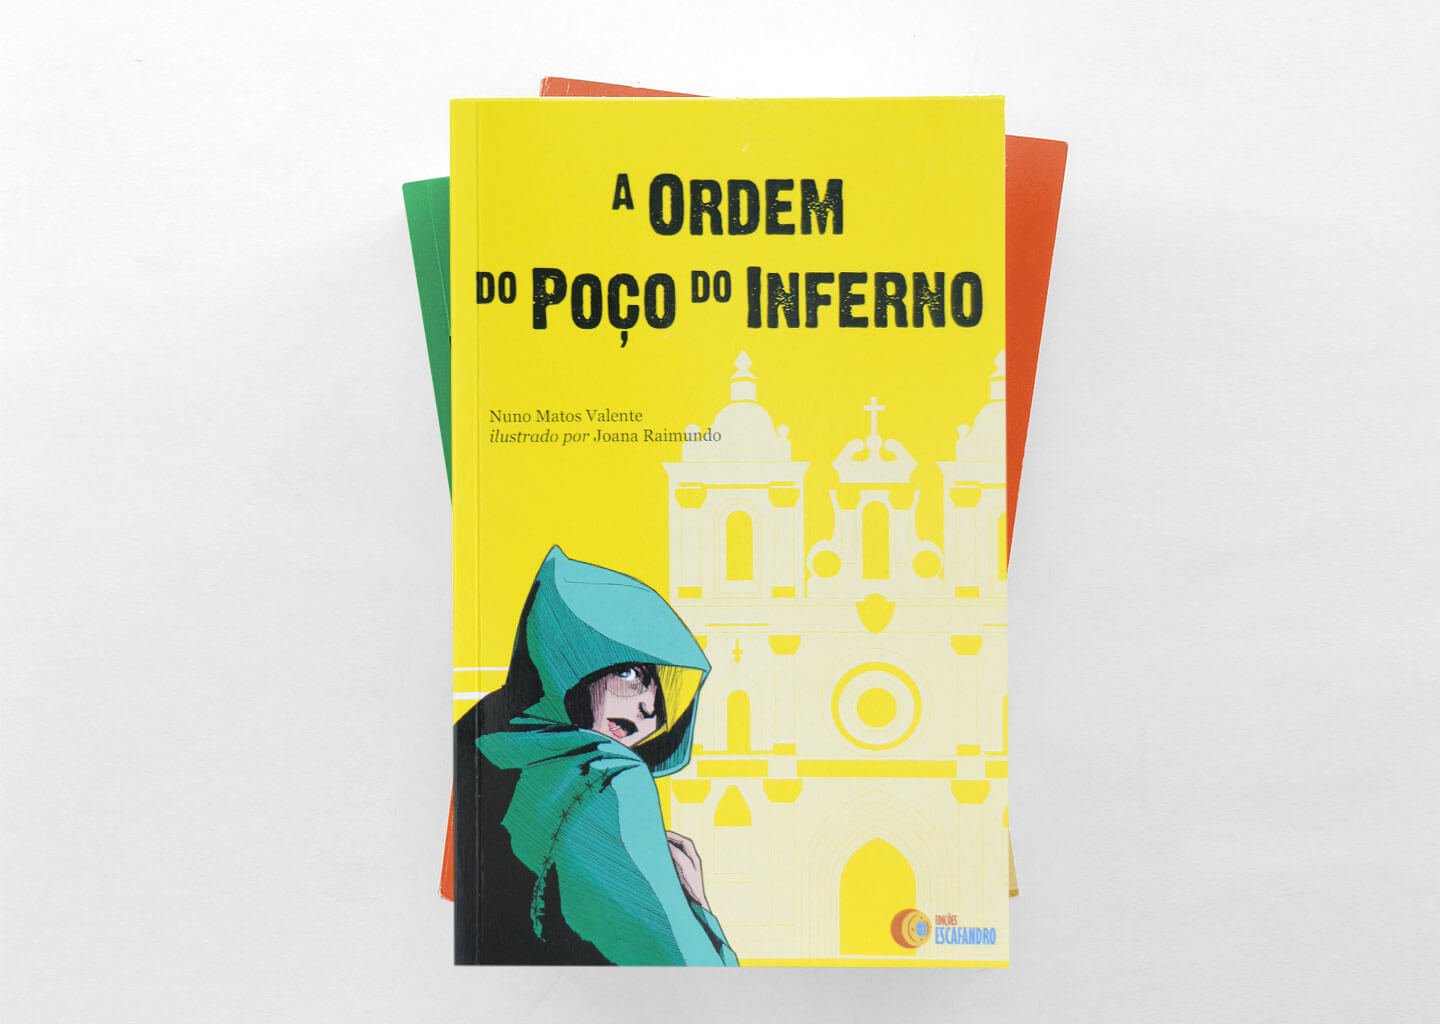 A Ordem do Poço do Inferno - book cover